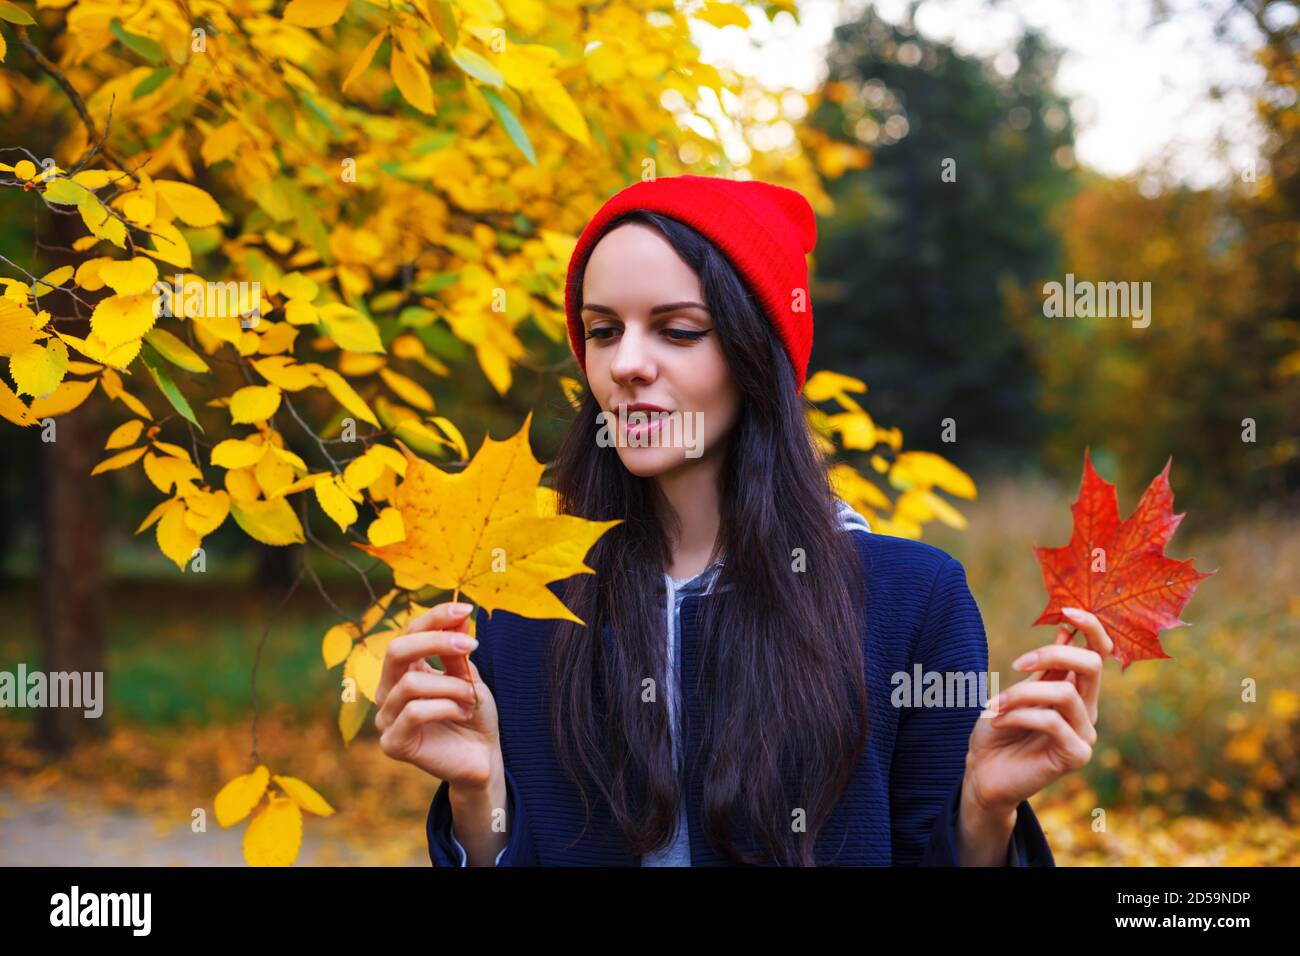 Nette Brünette mit langen Haaren sieht Ahornblatt in ihrer Hand. Herbstkonzept. Porträt im Freien mit farbenfrohem Laub Stockfoto